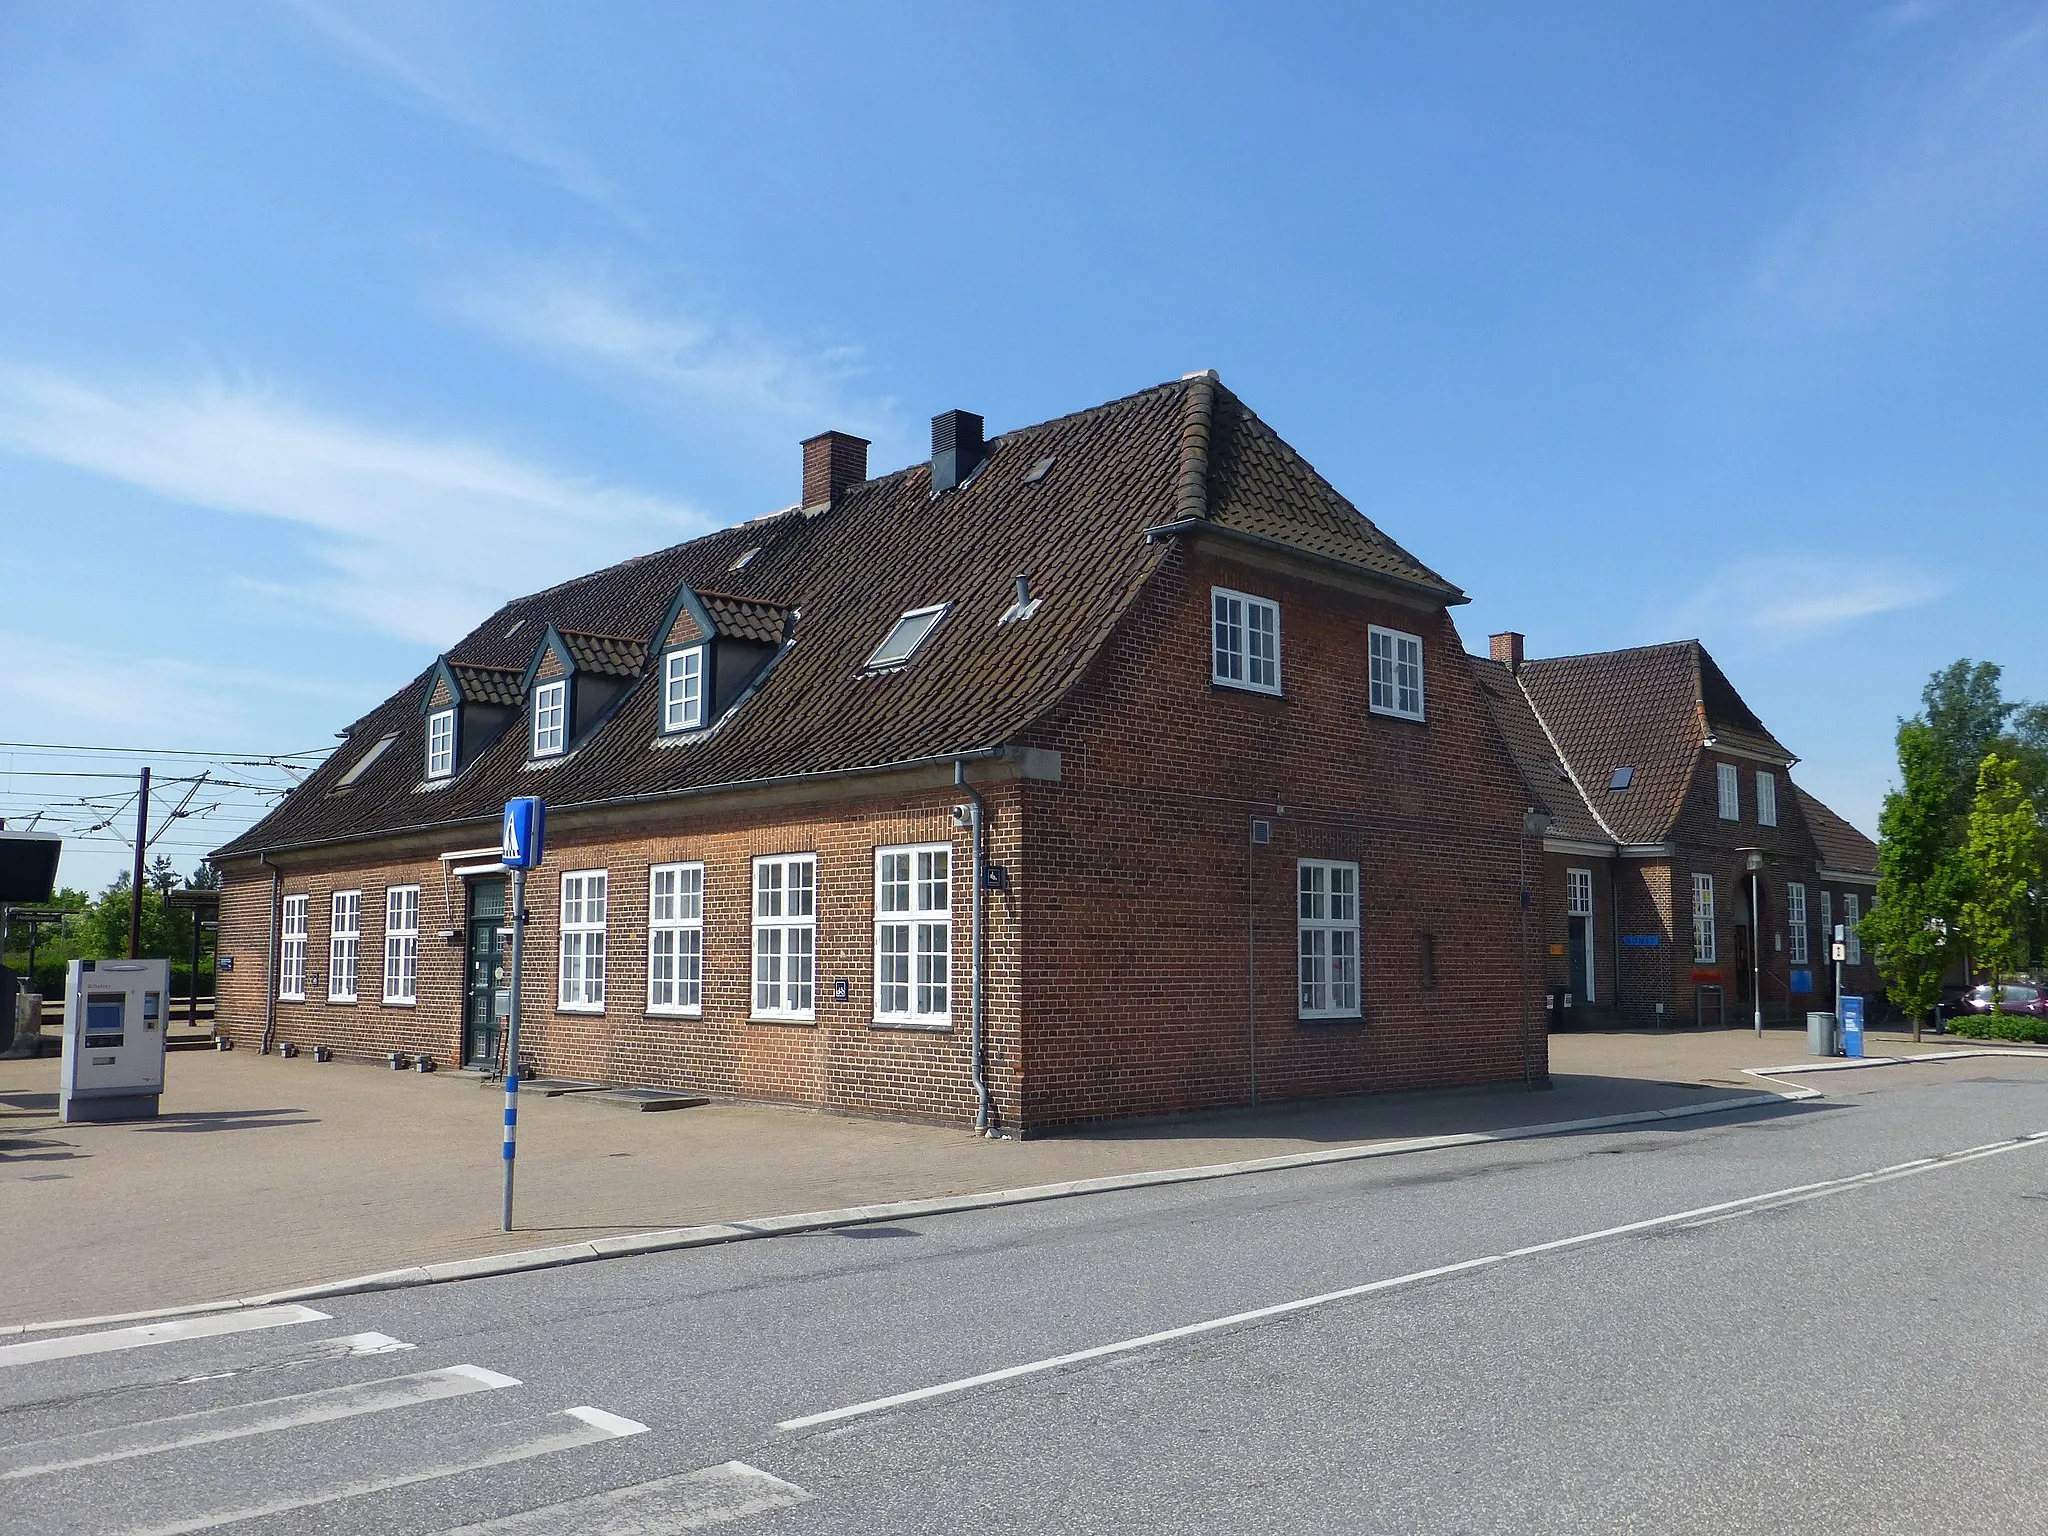 Photo showing: Hedehusene Station on the railway line Vestbanen between Copenhagen and Korsør in Denmark.